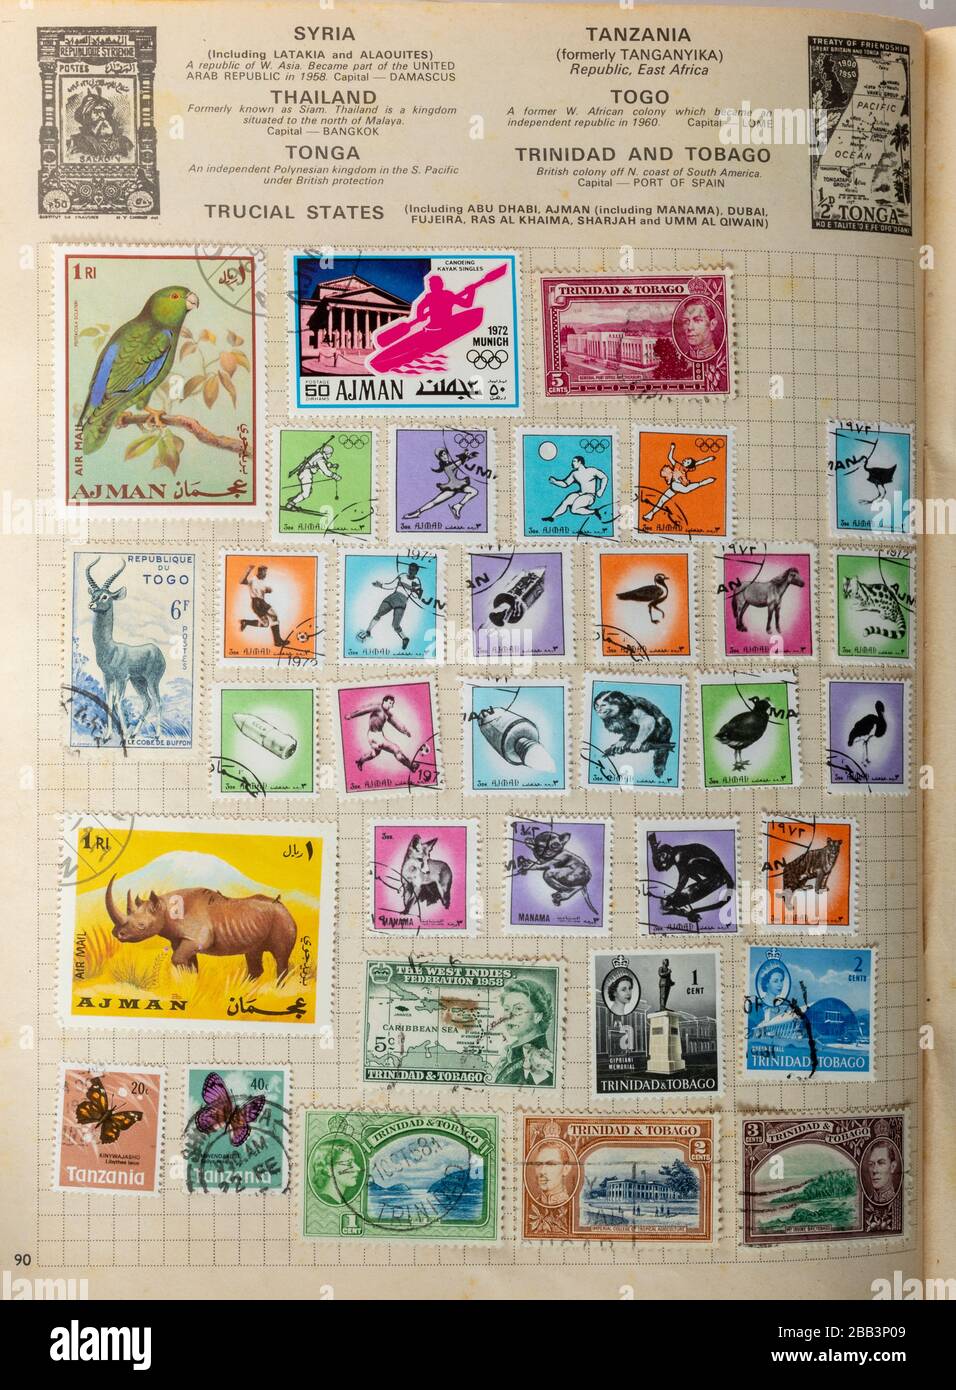 Album de timbres, collecte de timbres, passe-temps, hobbies, philatélie Banque D'Images